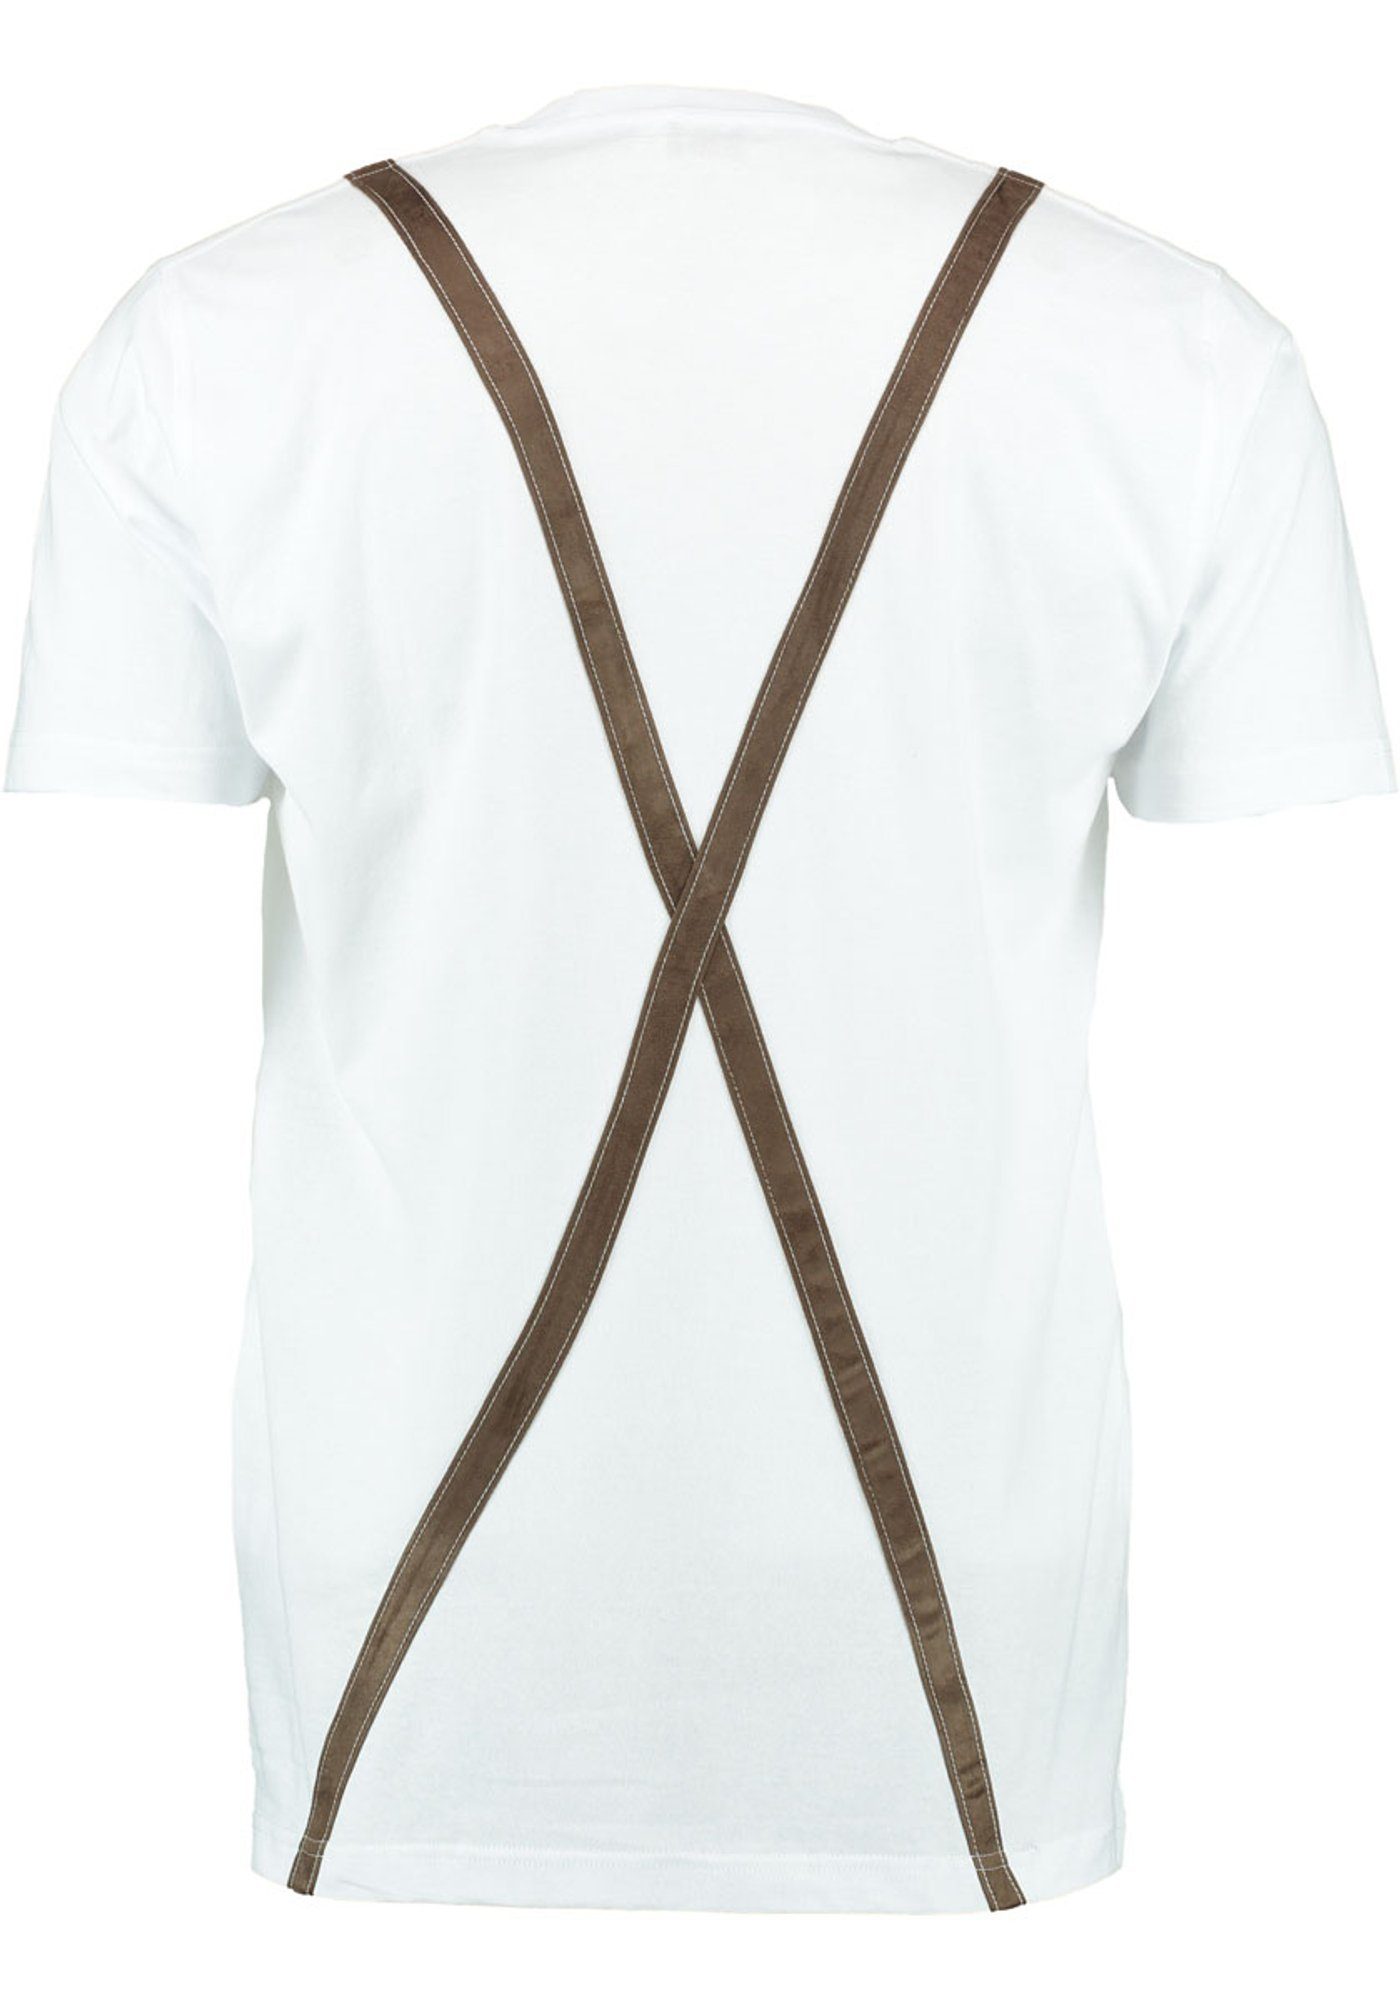 Lahuke T-Shirt Hosenträger aufgenähten Trachtenshirt und OS-Trachten mit Rundhalsausschnitt weiß